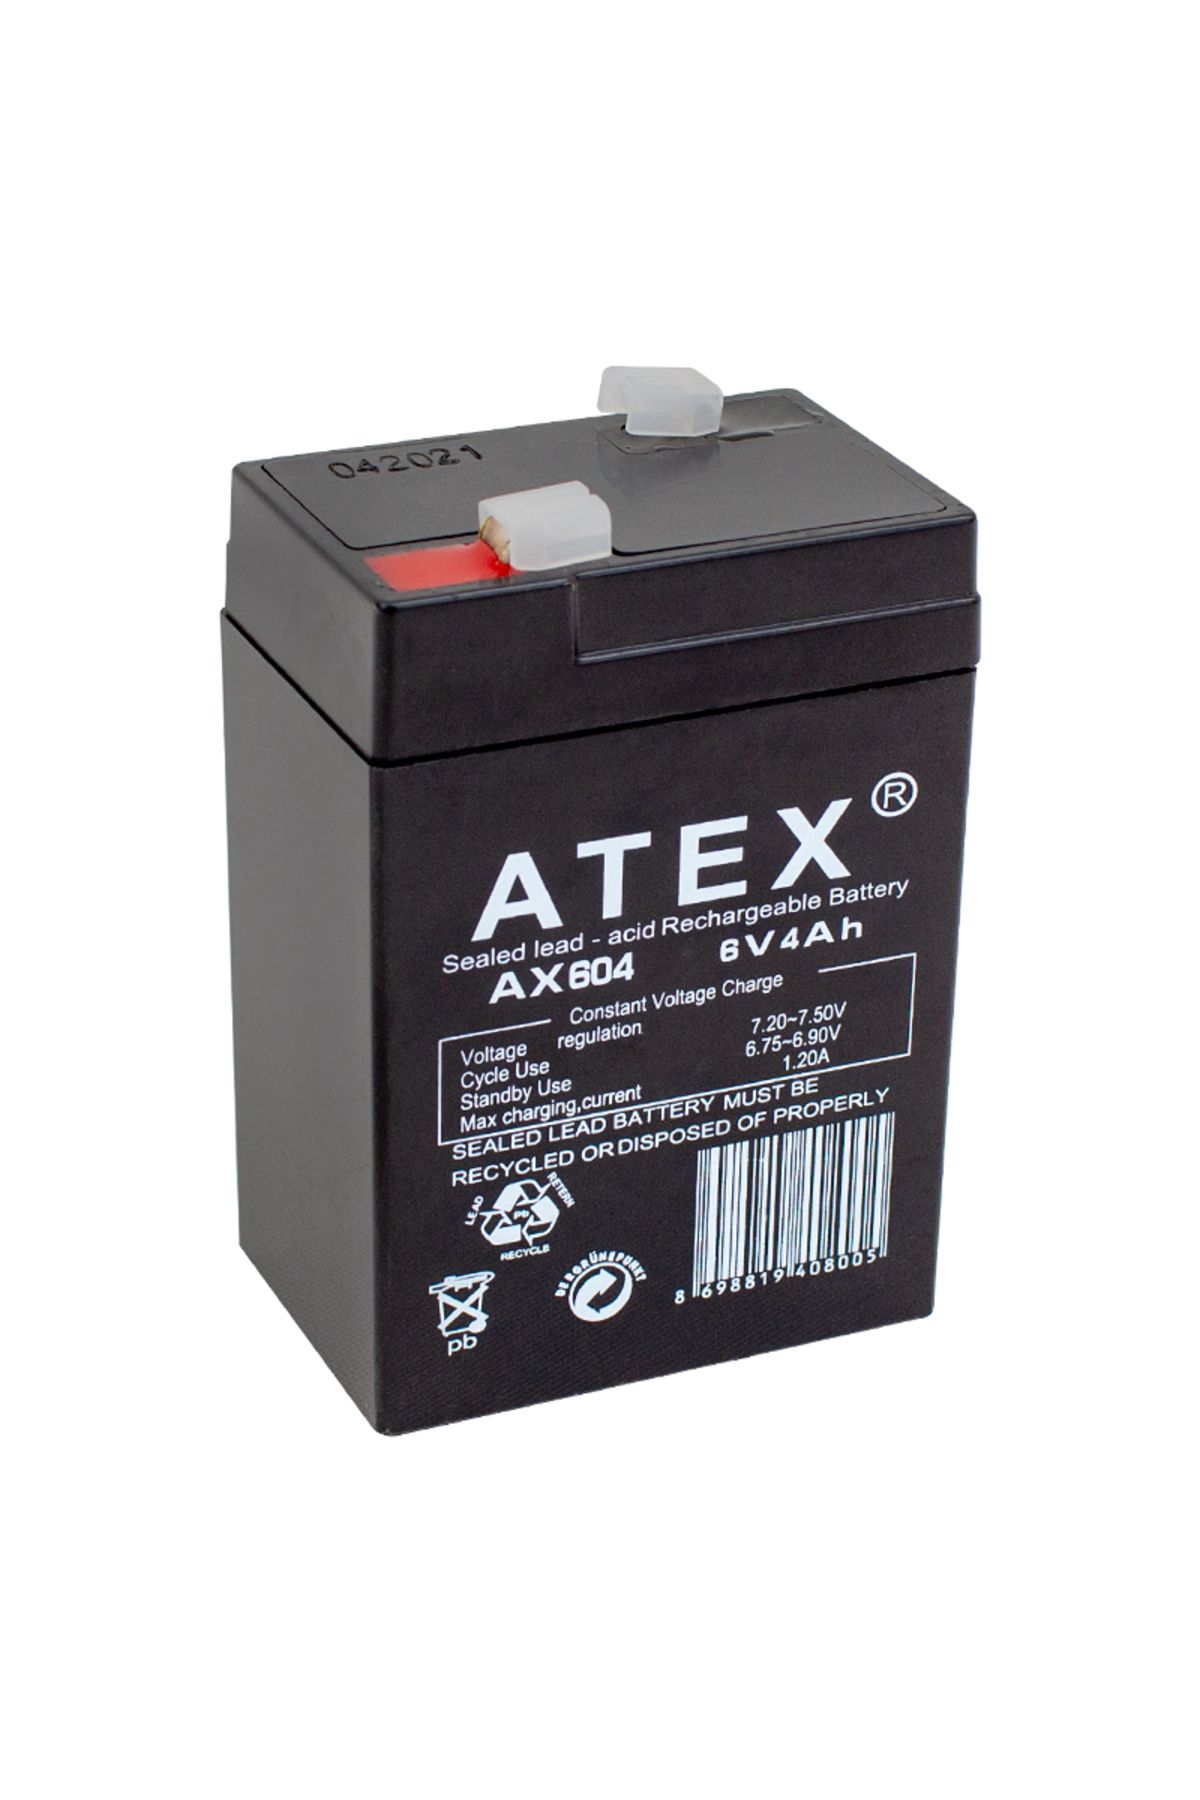 Lisinya Atex Ax-604 Akü 6 Volt - 4 Amper Işıldak Aküsü (70 X 48 X 101 Mm) (4172)